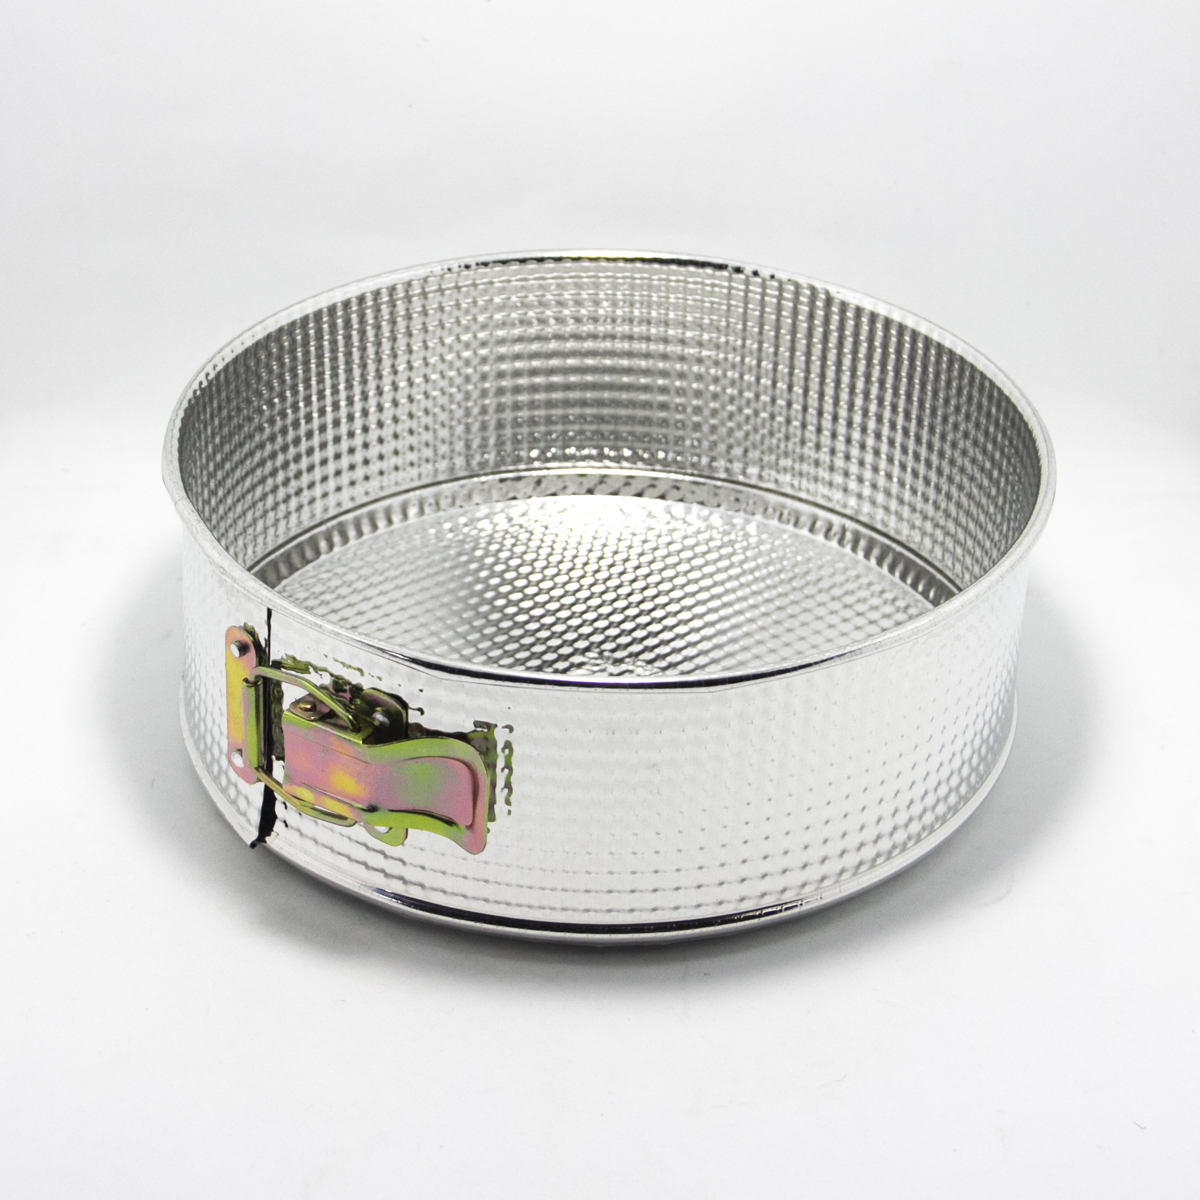 Tortera Graciela desarmable - aluminio - 23x8,5cm